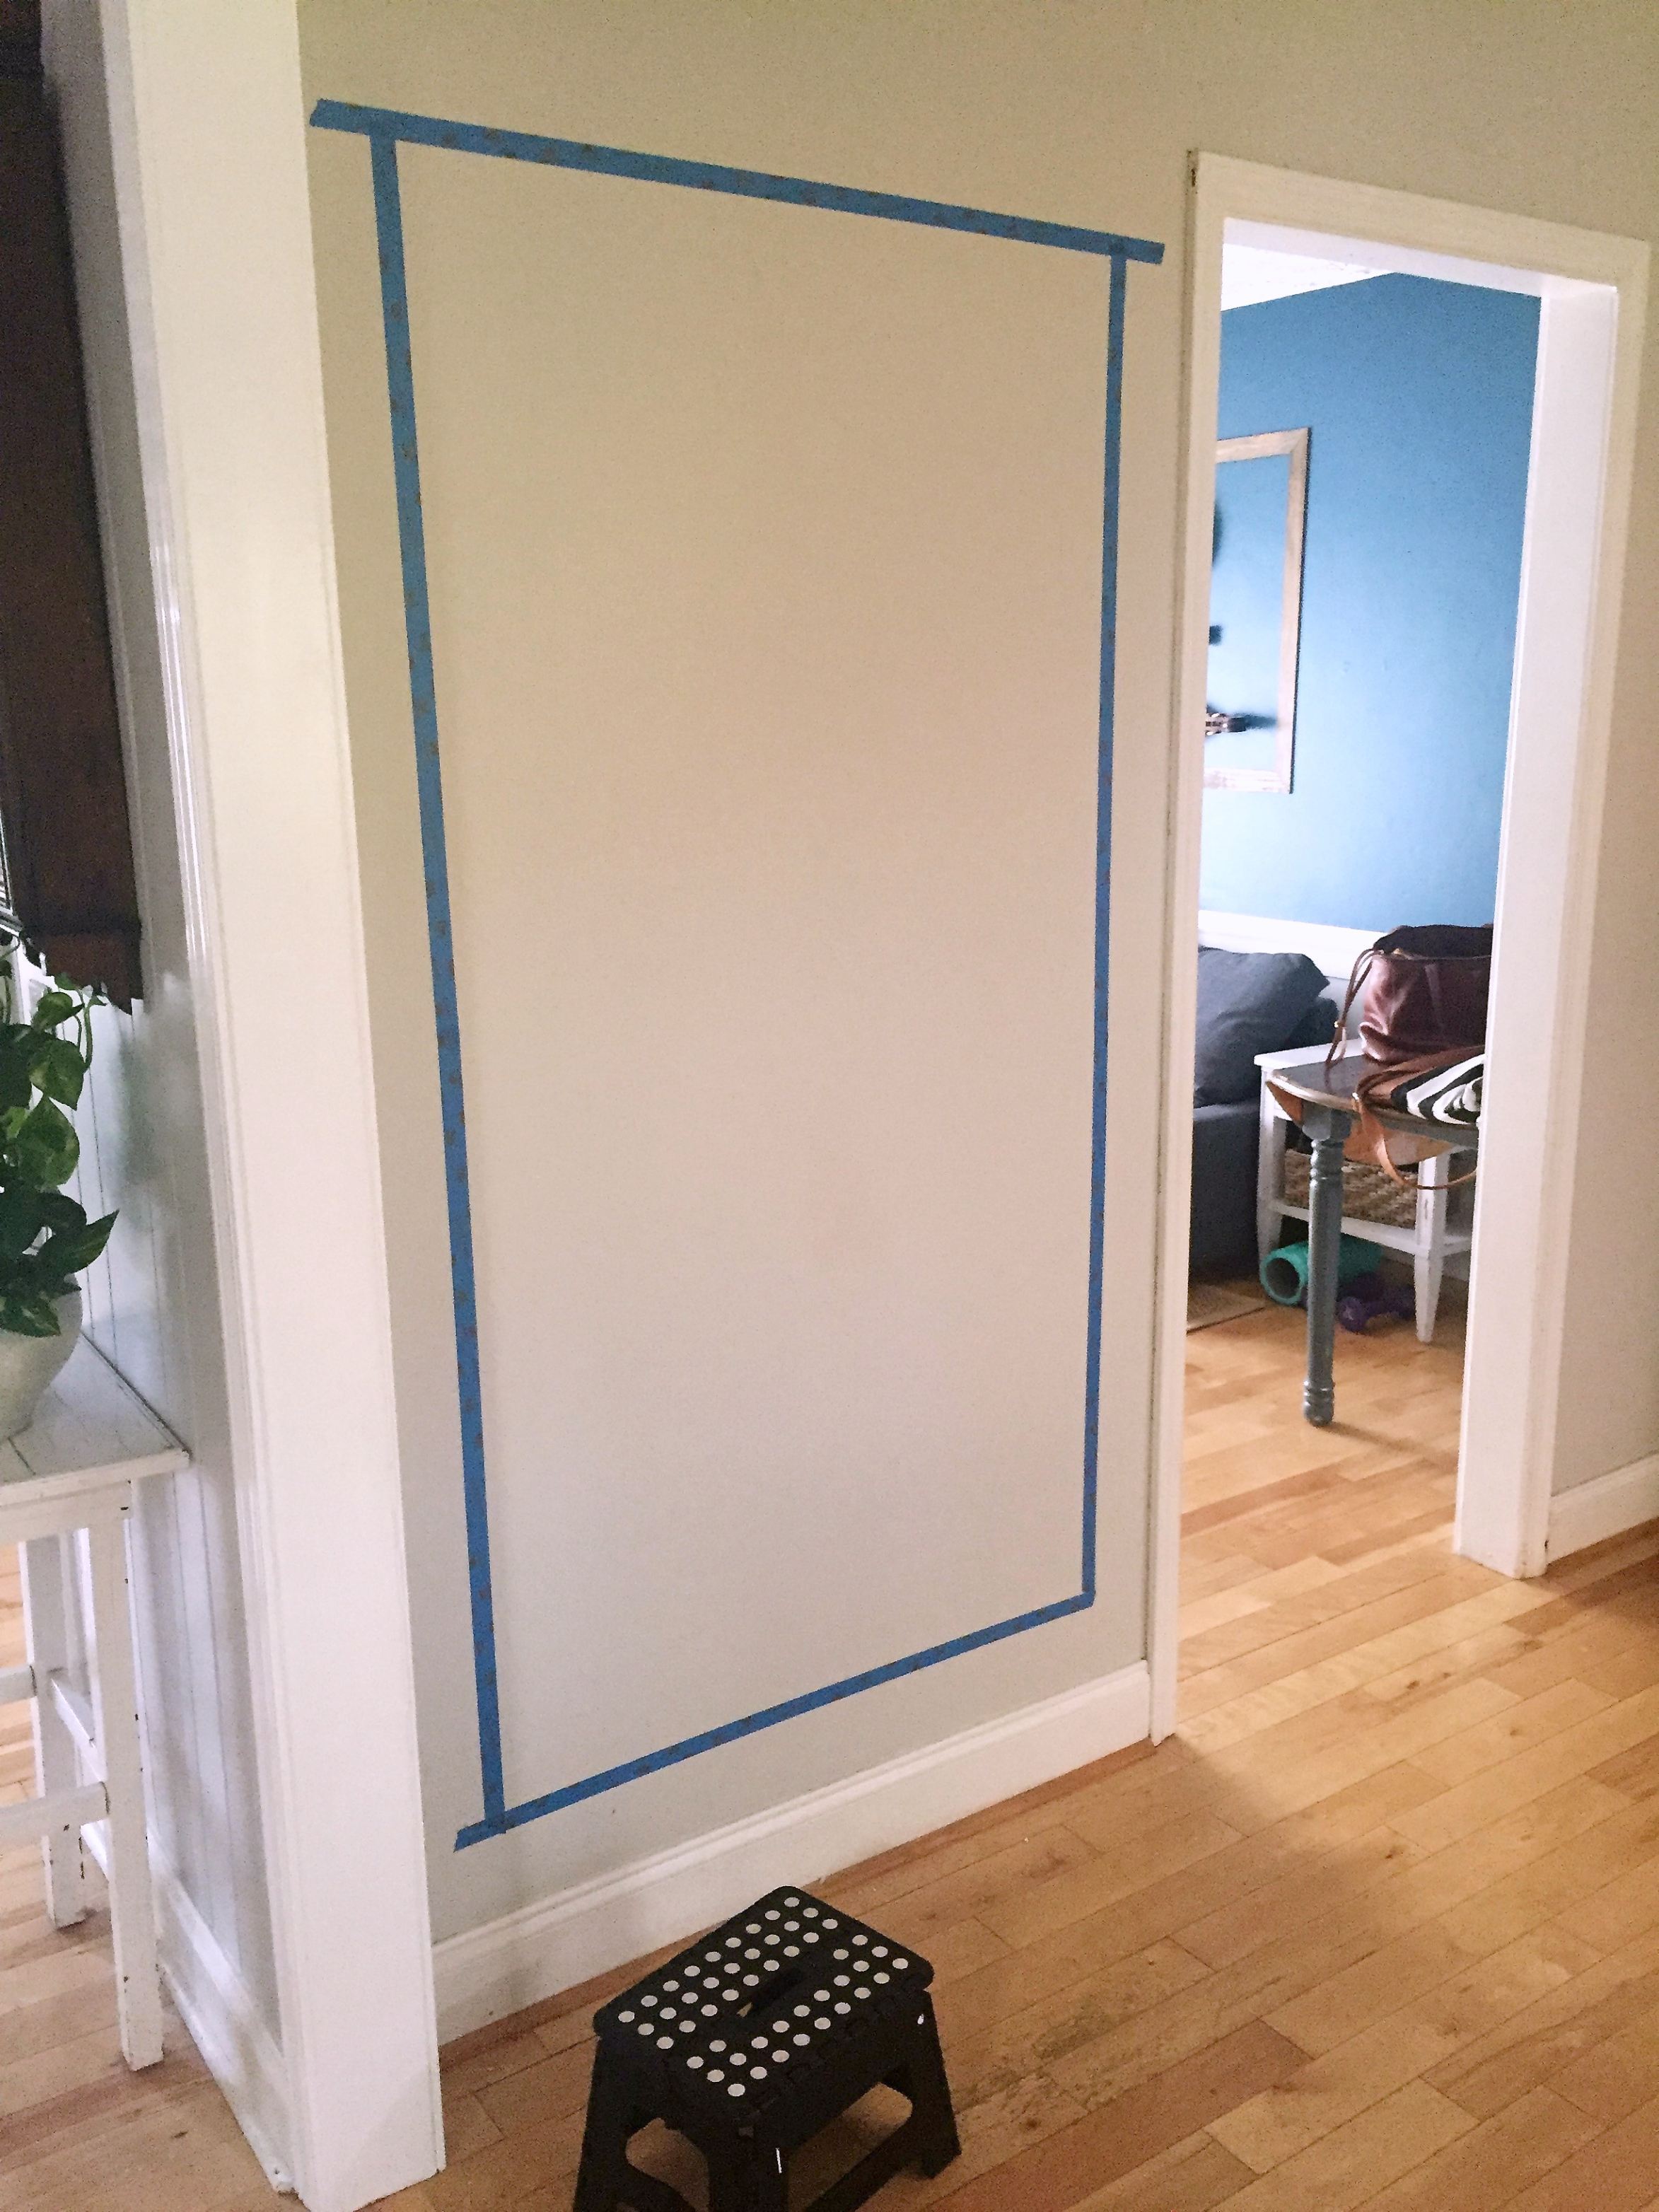 Framed Magnetic Chalkboard DIY - Forrester Home